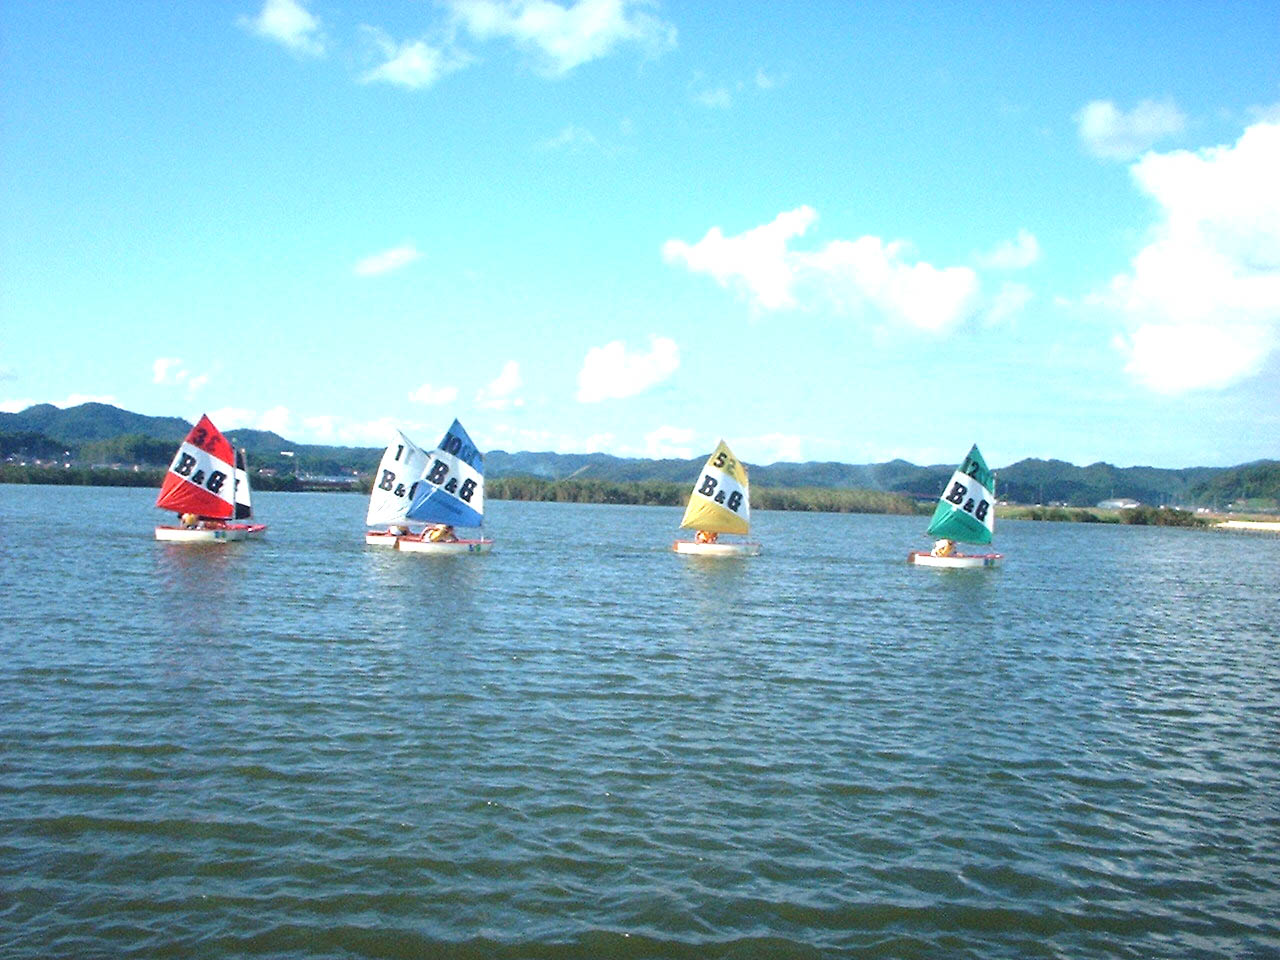 青い空と白い雲を背景に、西潟ノ内の湖沼上に浮かぶ、赤色、白色、青色、黄色、緑色の各ヨットを撮影した写真